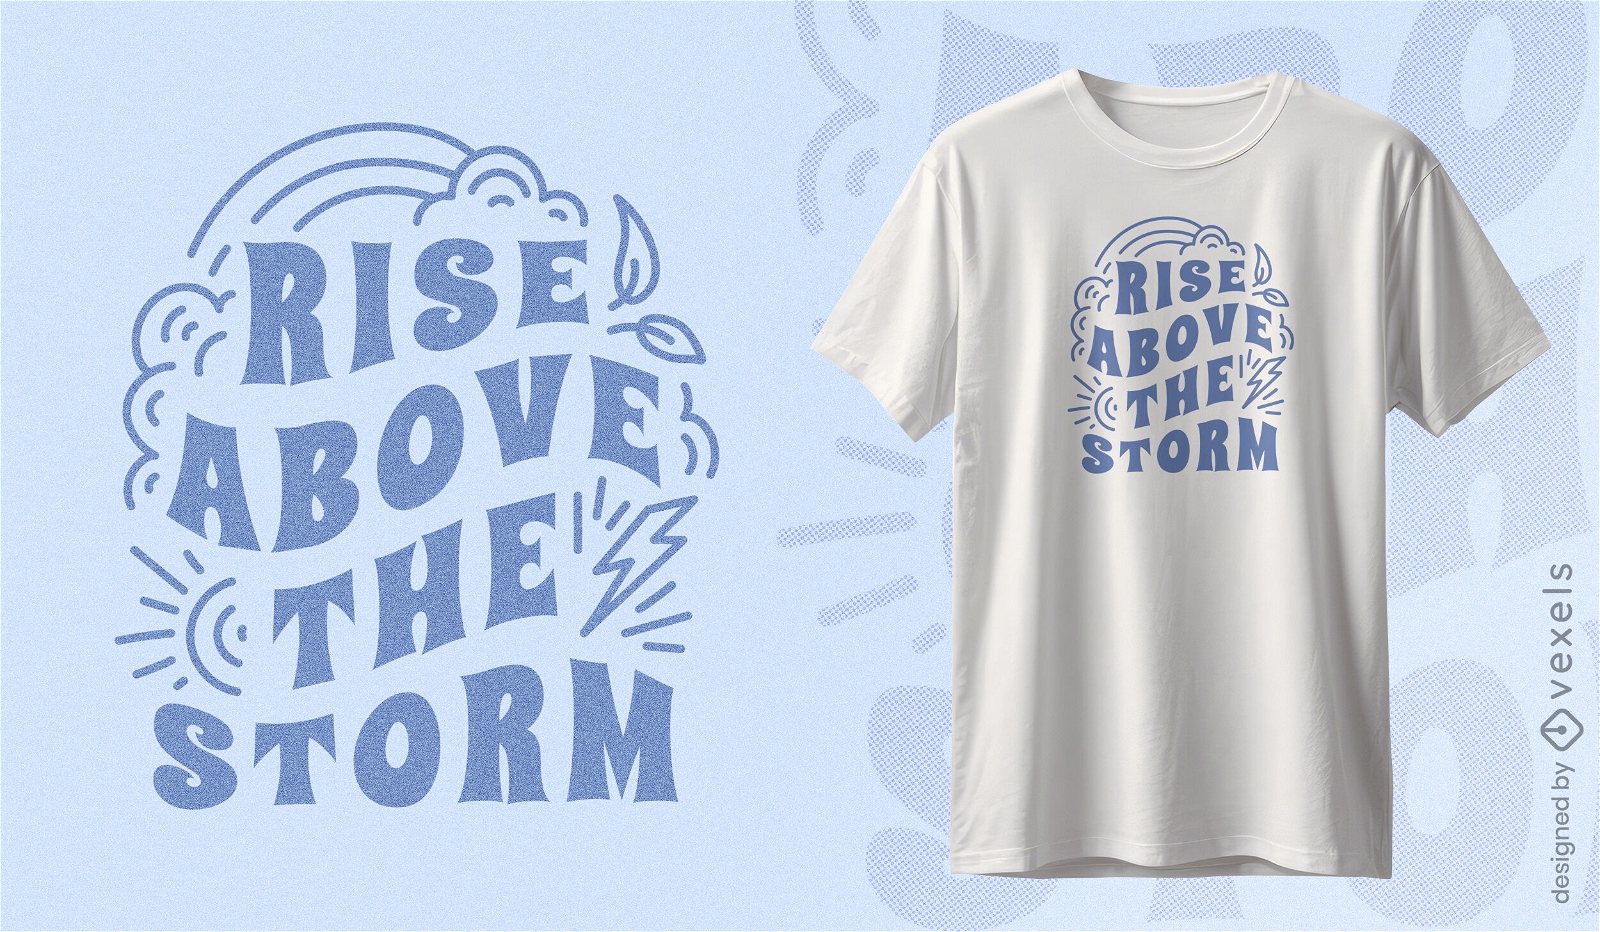 Motivational storm quote t-shirt design